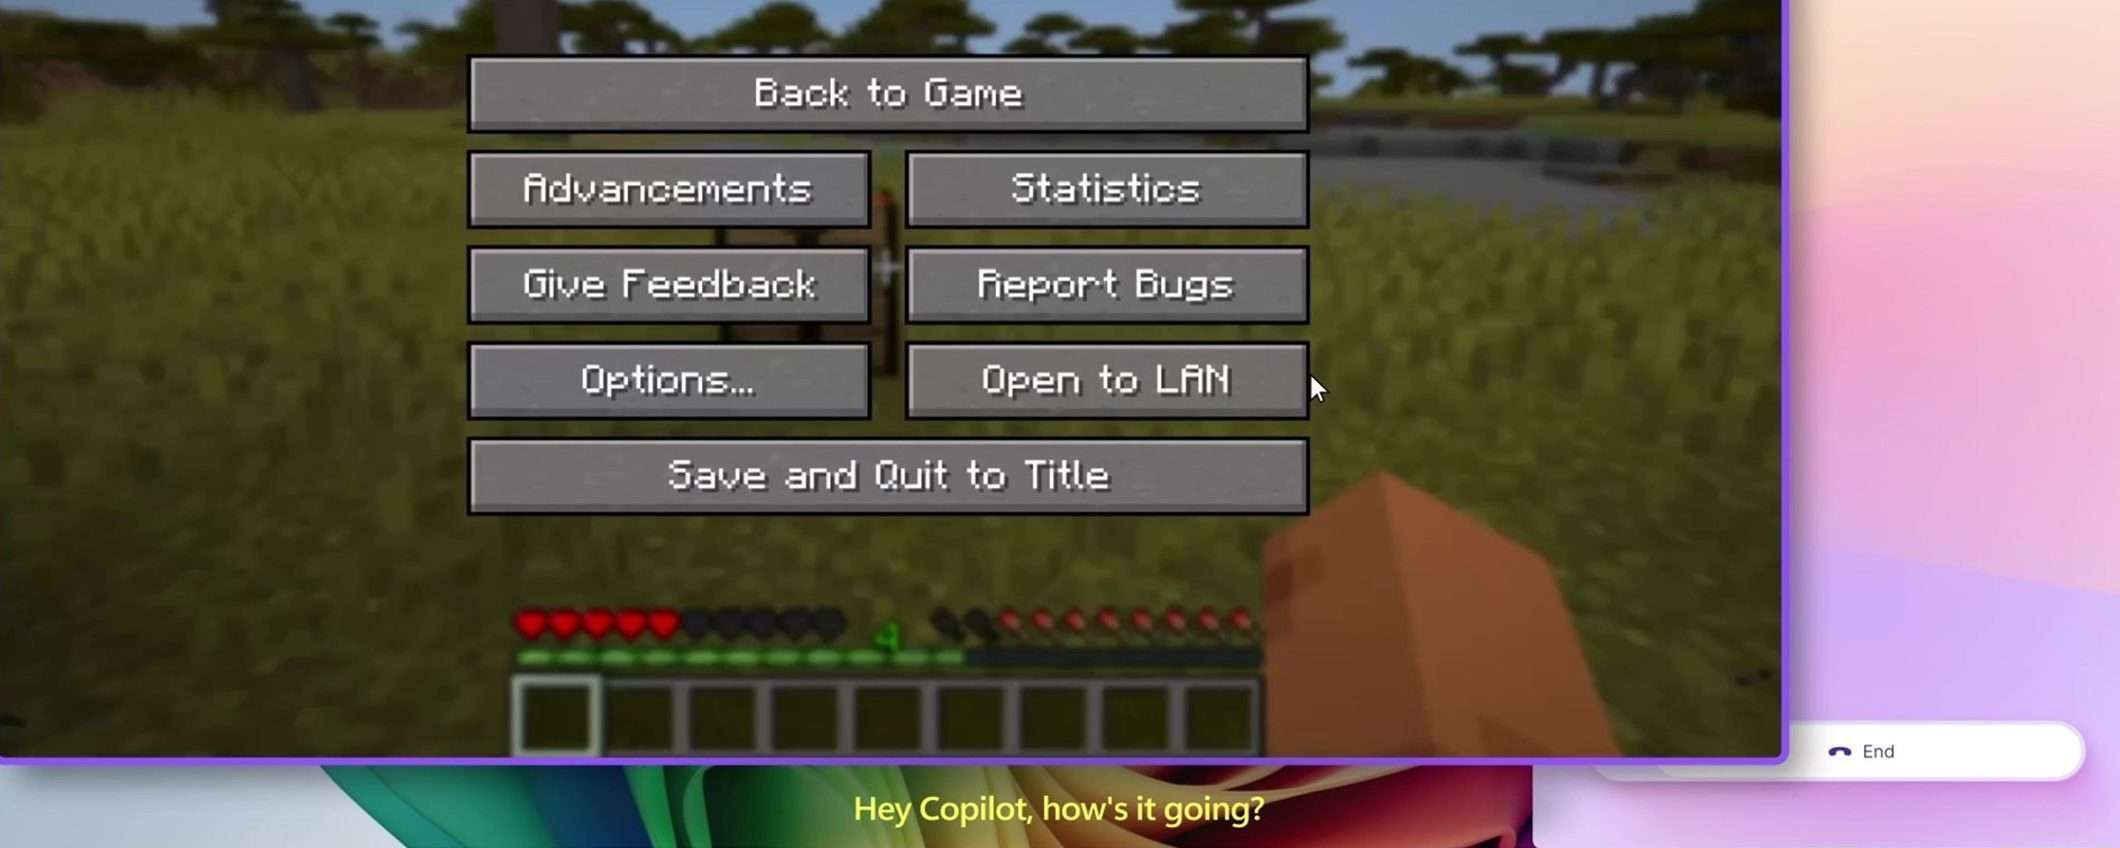 Copilot di Microsoft arriva su Minecraft per aiutare i giocatori